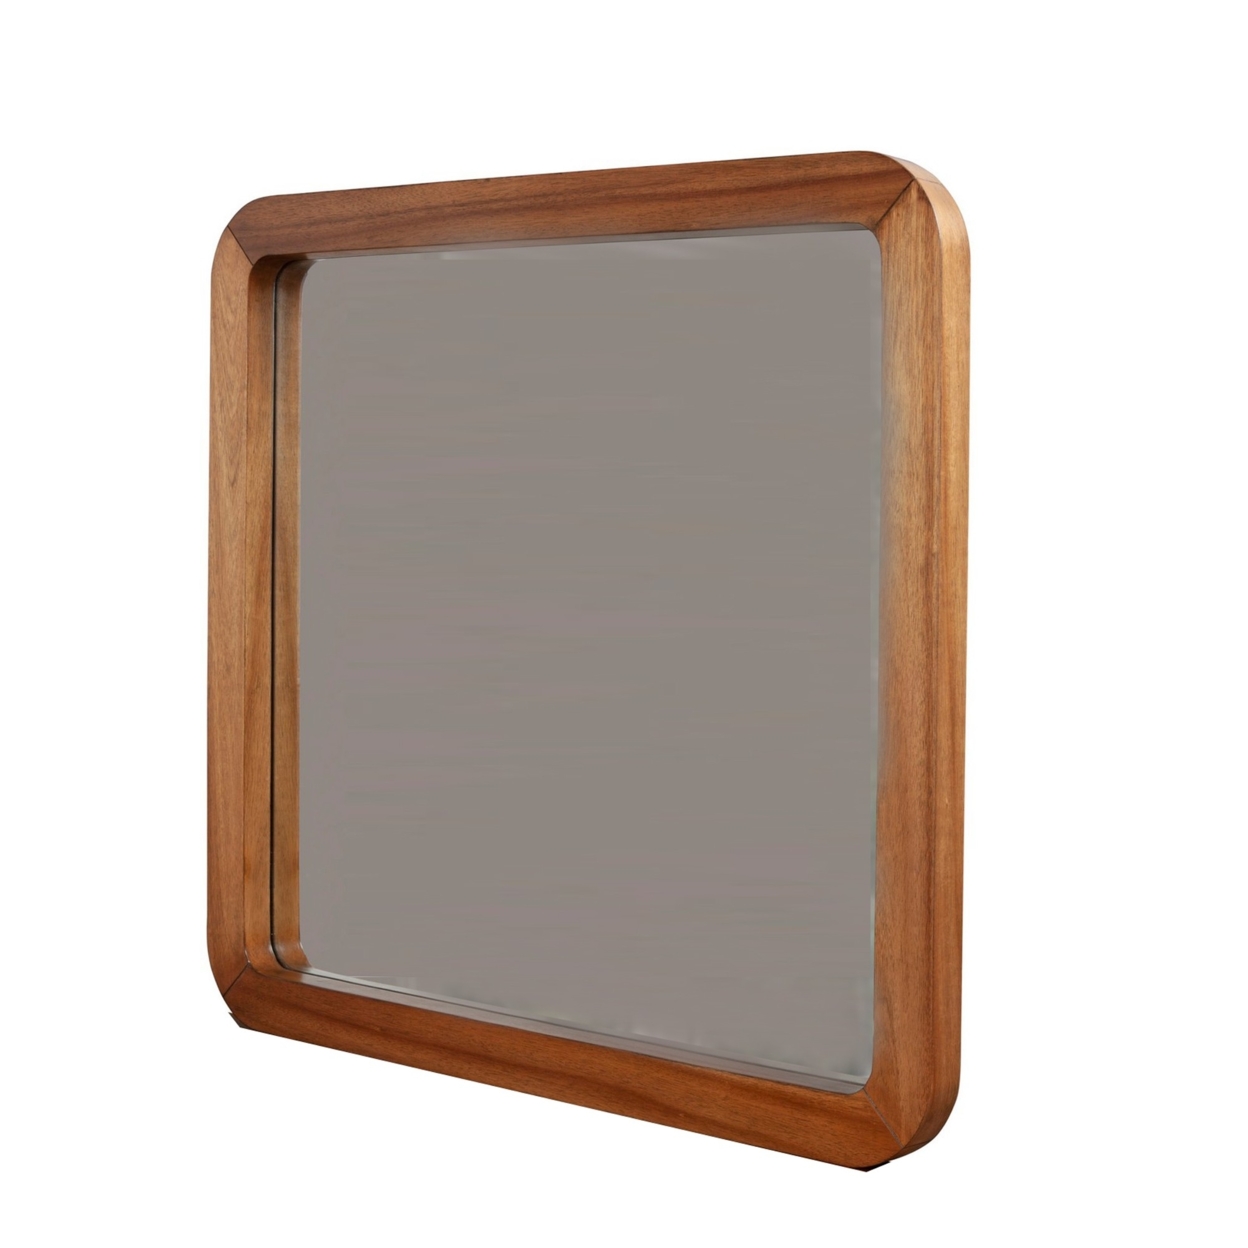 Neo 37 X 40 Rectangular Dresser Mirror, Mahogany Wood, Rich Honey Brown- Saltoro Sherpi